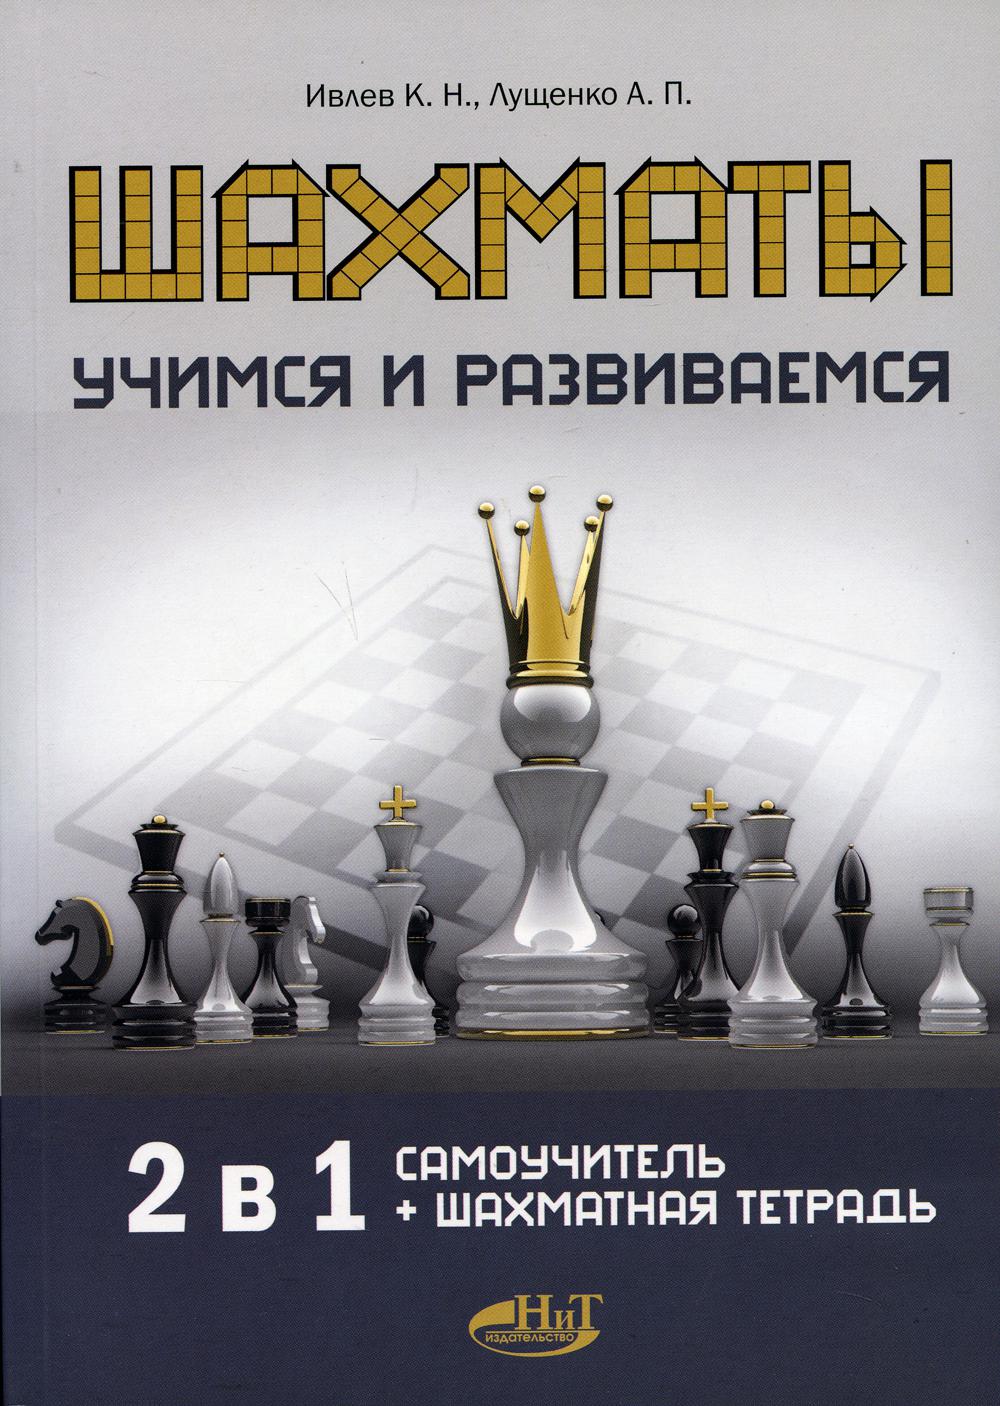 фото Книга шахматы. учимся и развиваемся наука и техника